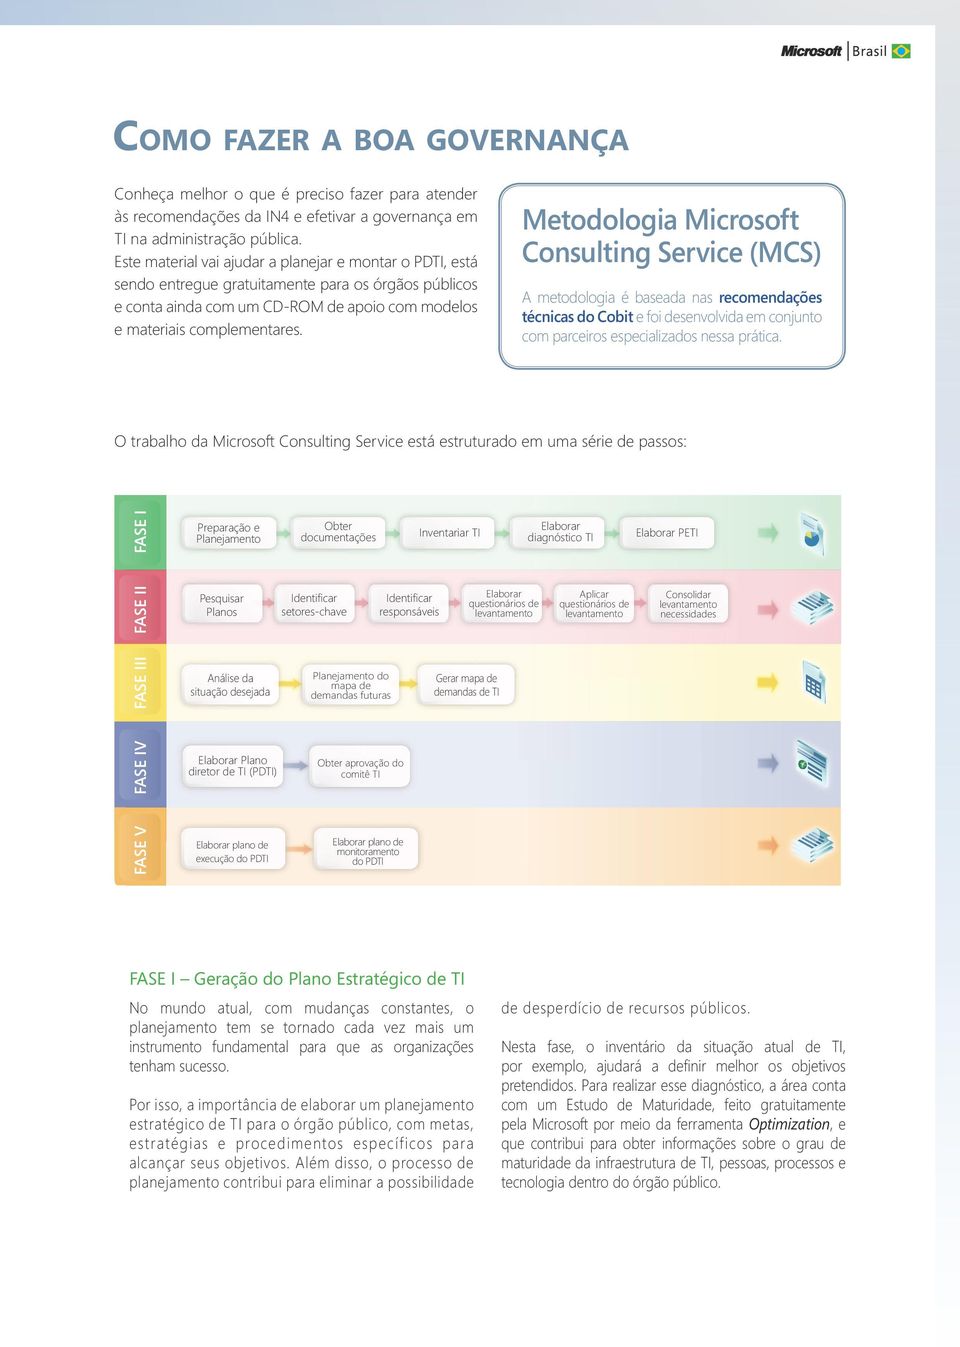 Metodologia Microsoft Consulting Service (MCS) A metodologia é baseada nas recomendações técnicas do Cobit e foi desenvolvida em conjunto com parceiros especializados nessa prática.